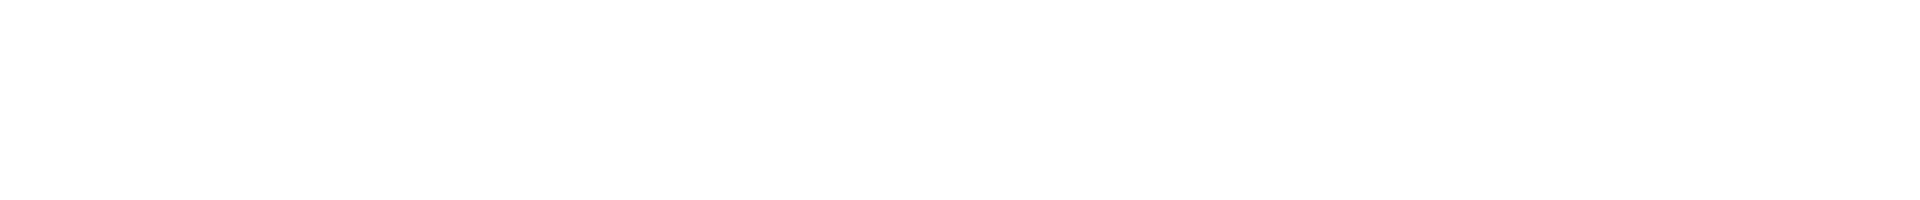 OGCFM